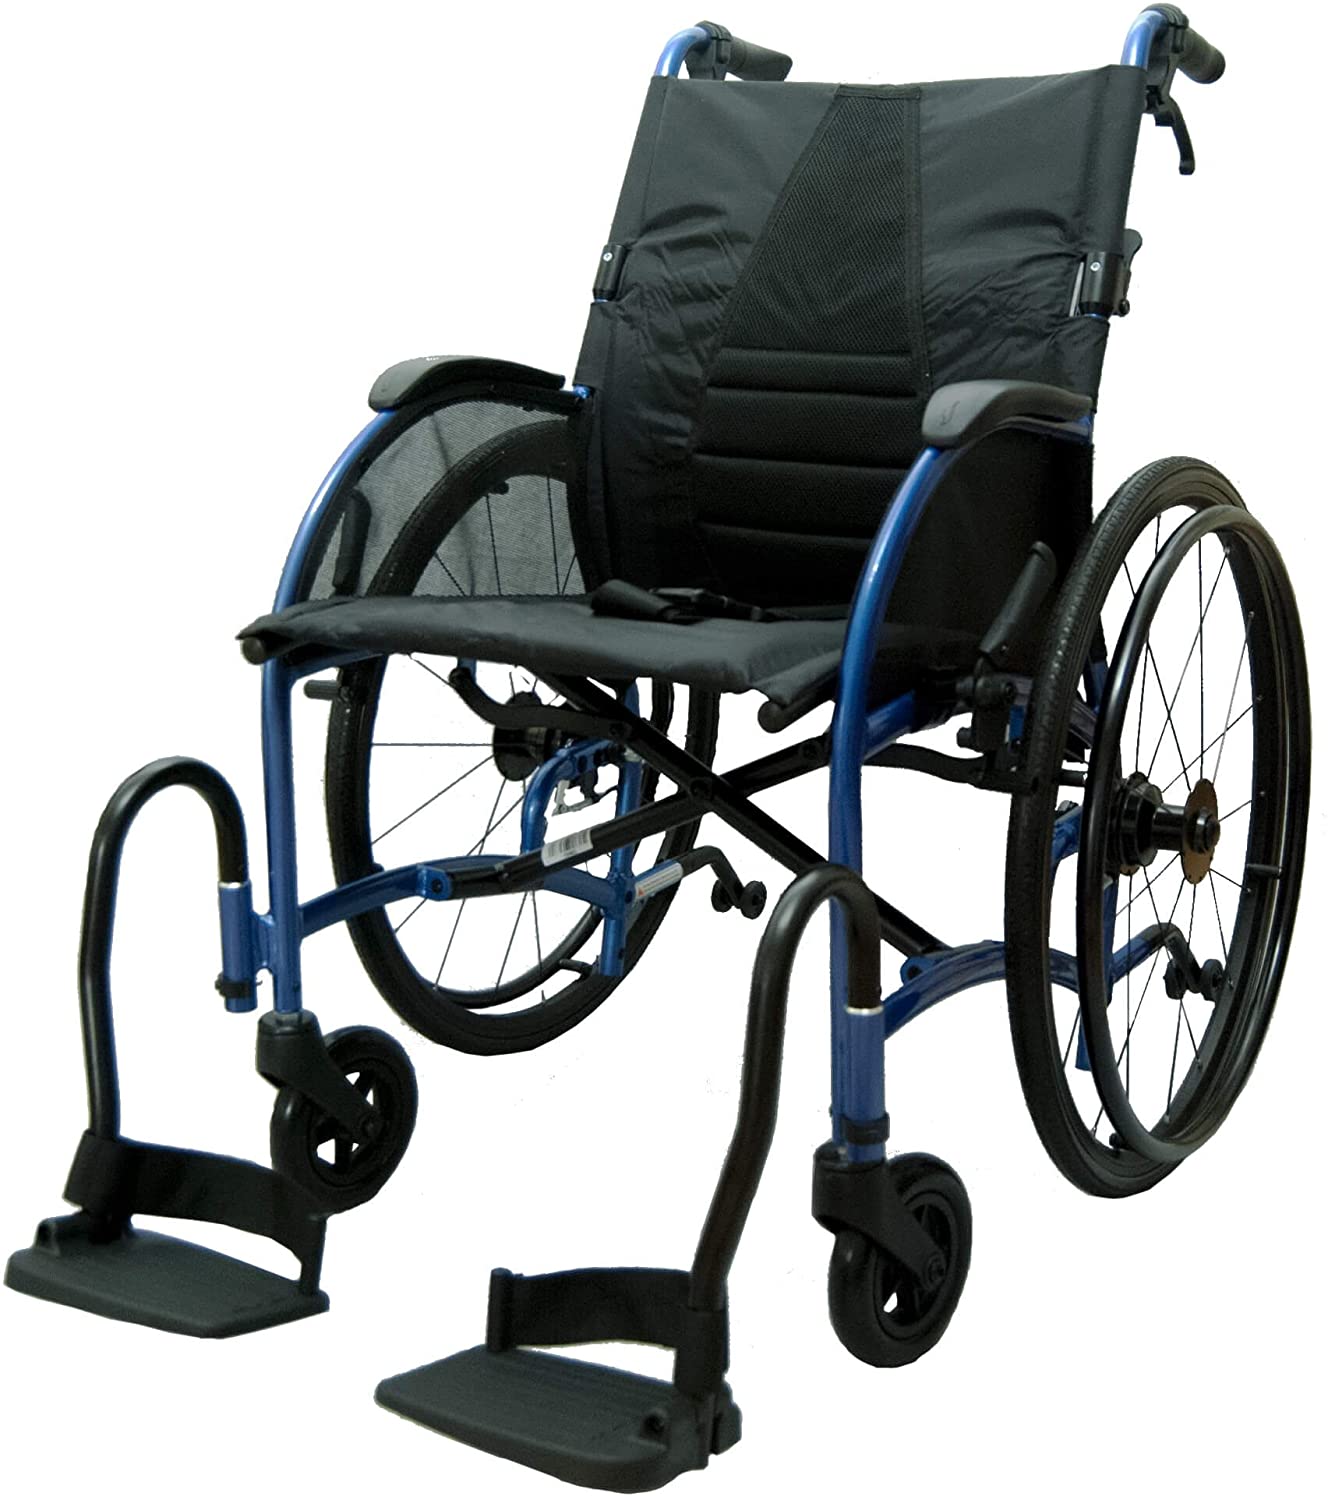 Bescomedical – Strongback – Lightweight Folding Wheelchair